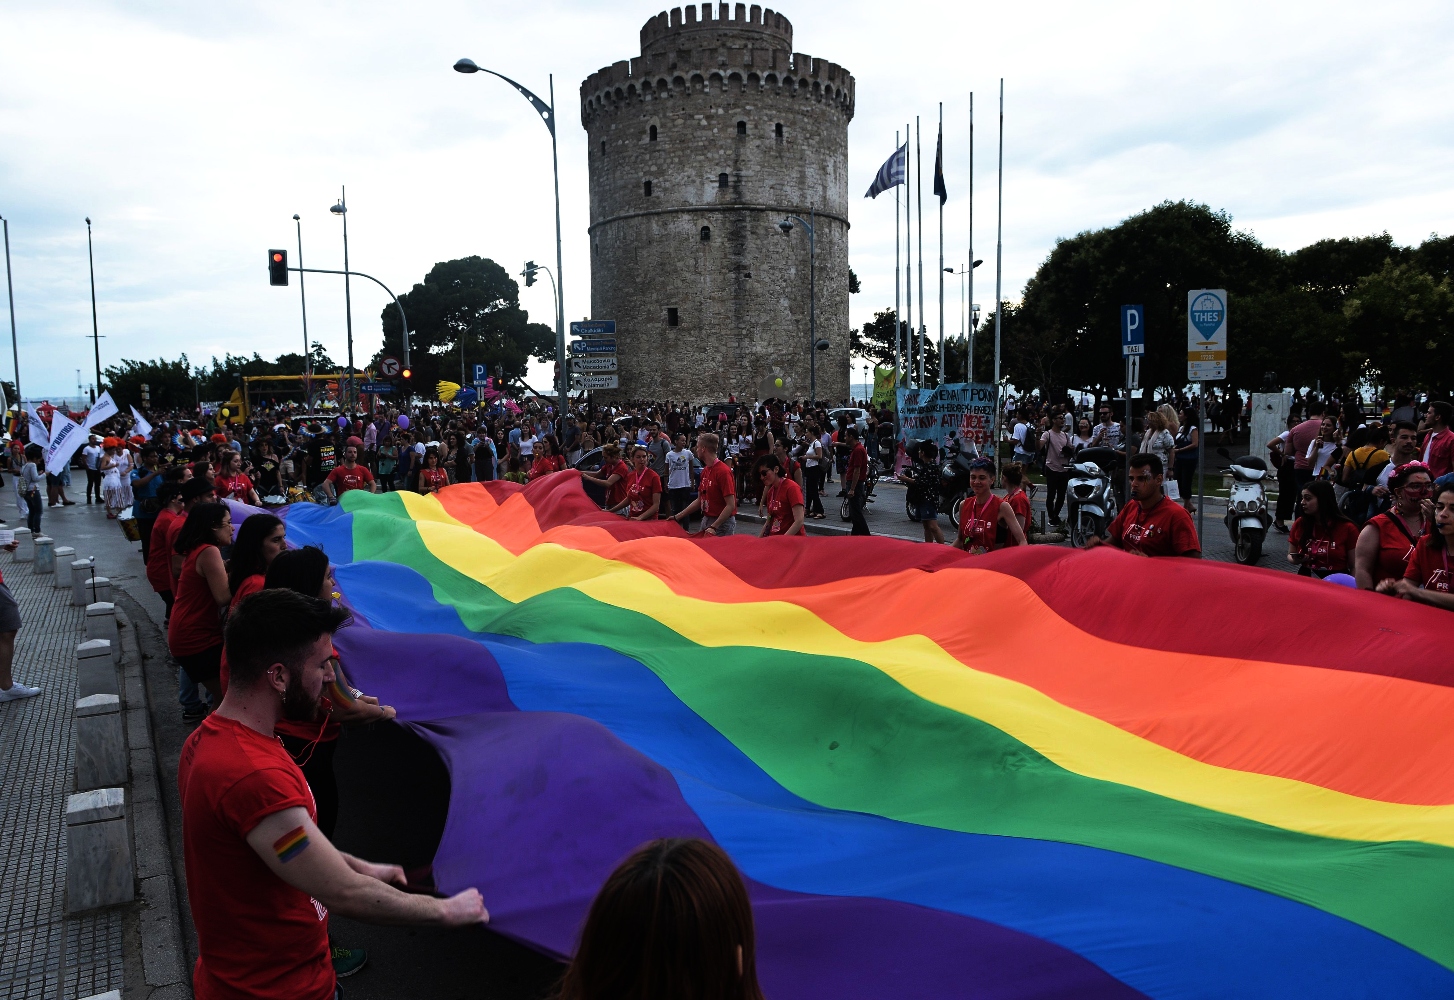 Θεσσαλονίκη: Κορυφώνεται το Pride με σύνθημα «μάθημα αποδοχής» και μεγαλειώδη, πολύχρωμη πορεία